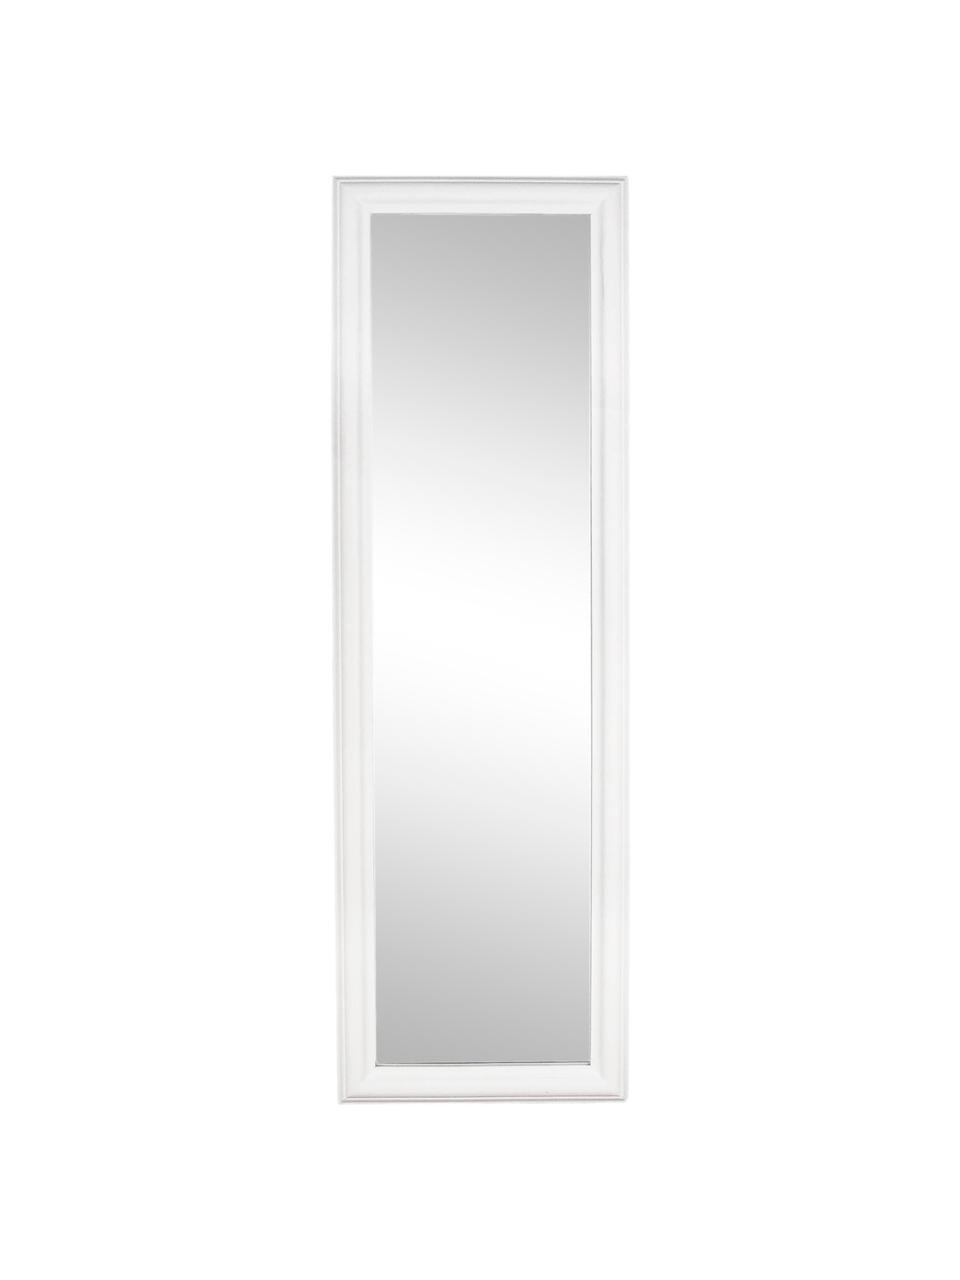 Eckiger Wandspiegel Sanzio mit weissem Paulowniaholzrahmen, Rahmen: Paulowniaholz, beschichte, Spiegelfläche: Spiegelglas, Weiss, B 42 x H 132 cm